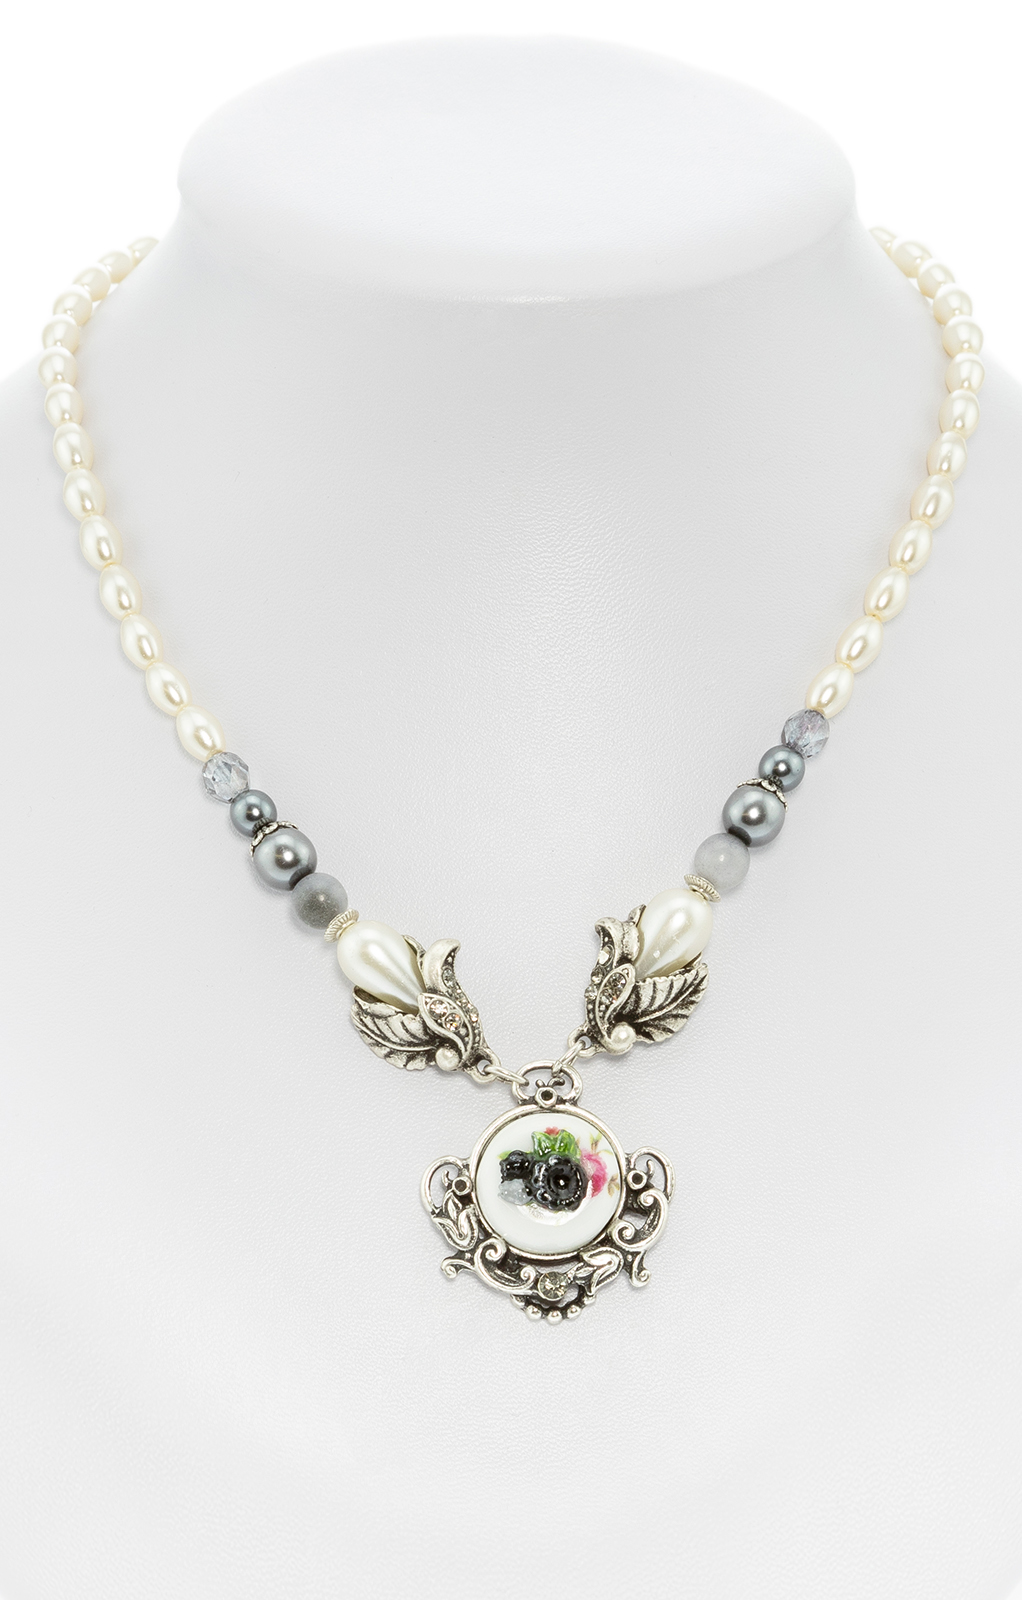 Pearl necklace with flower pendant gray von Schuhmacher